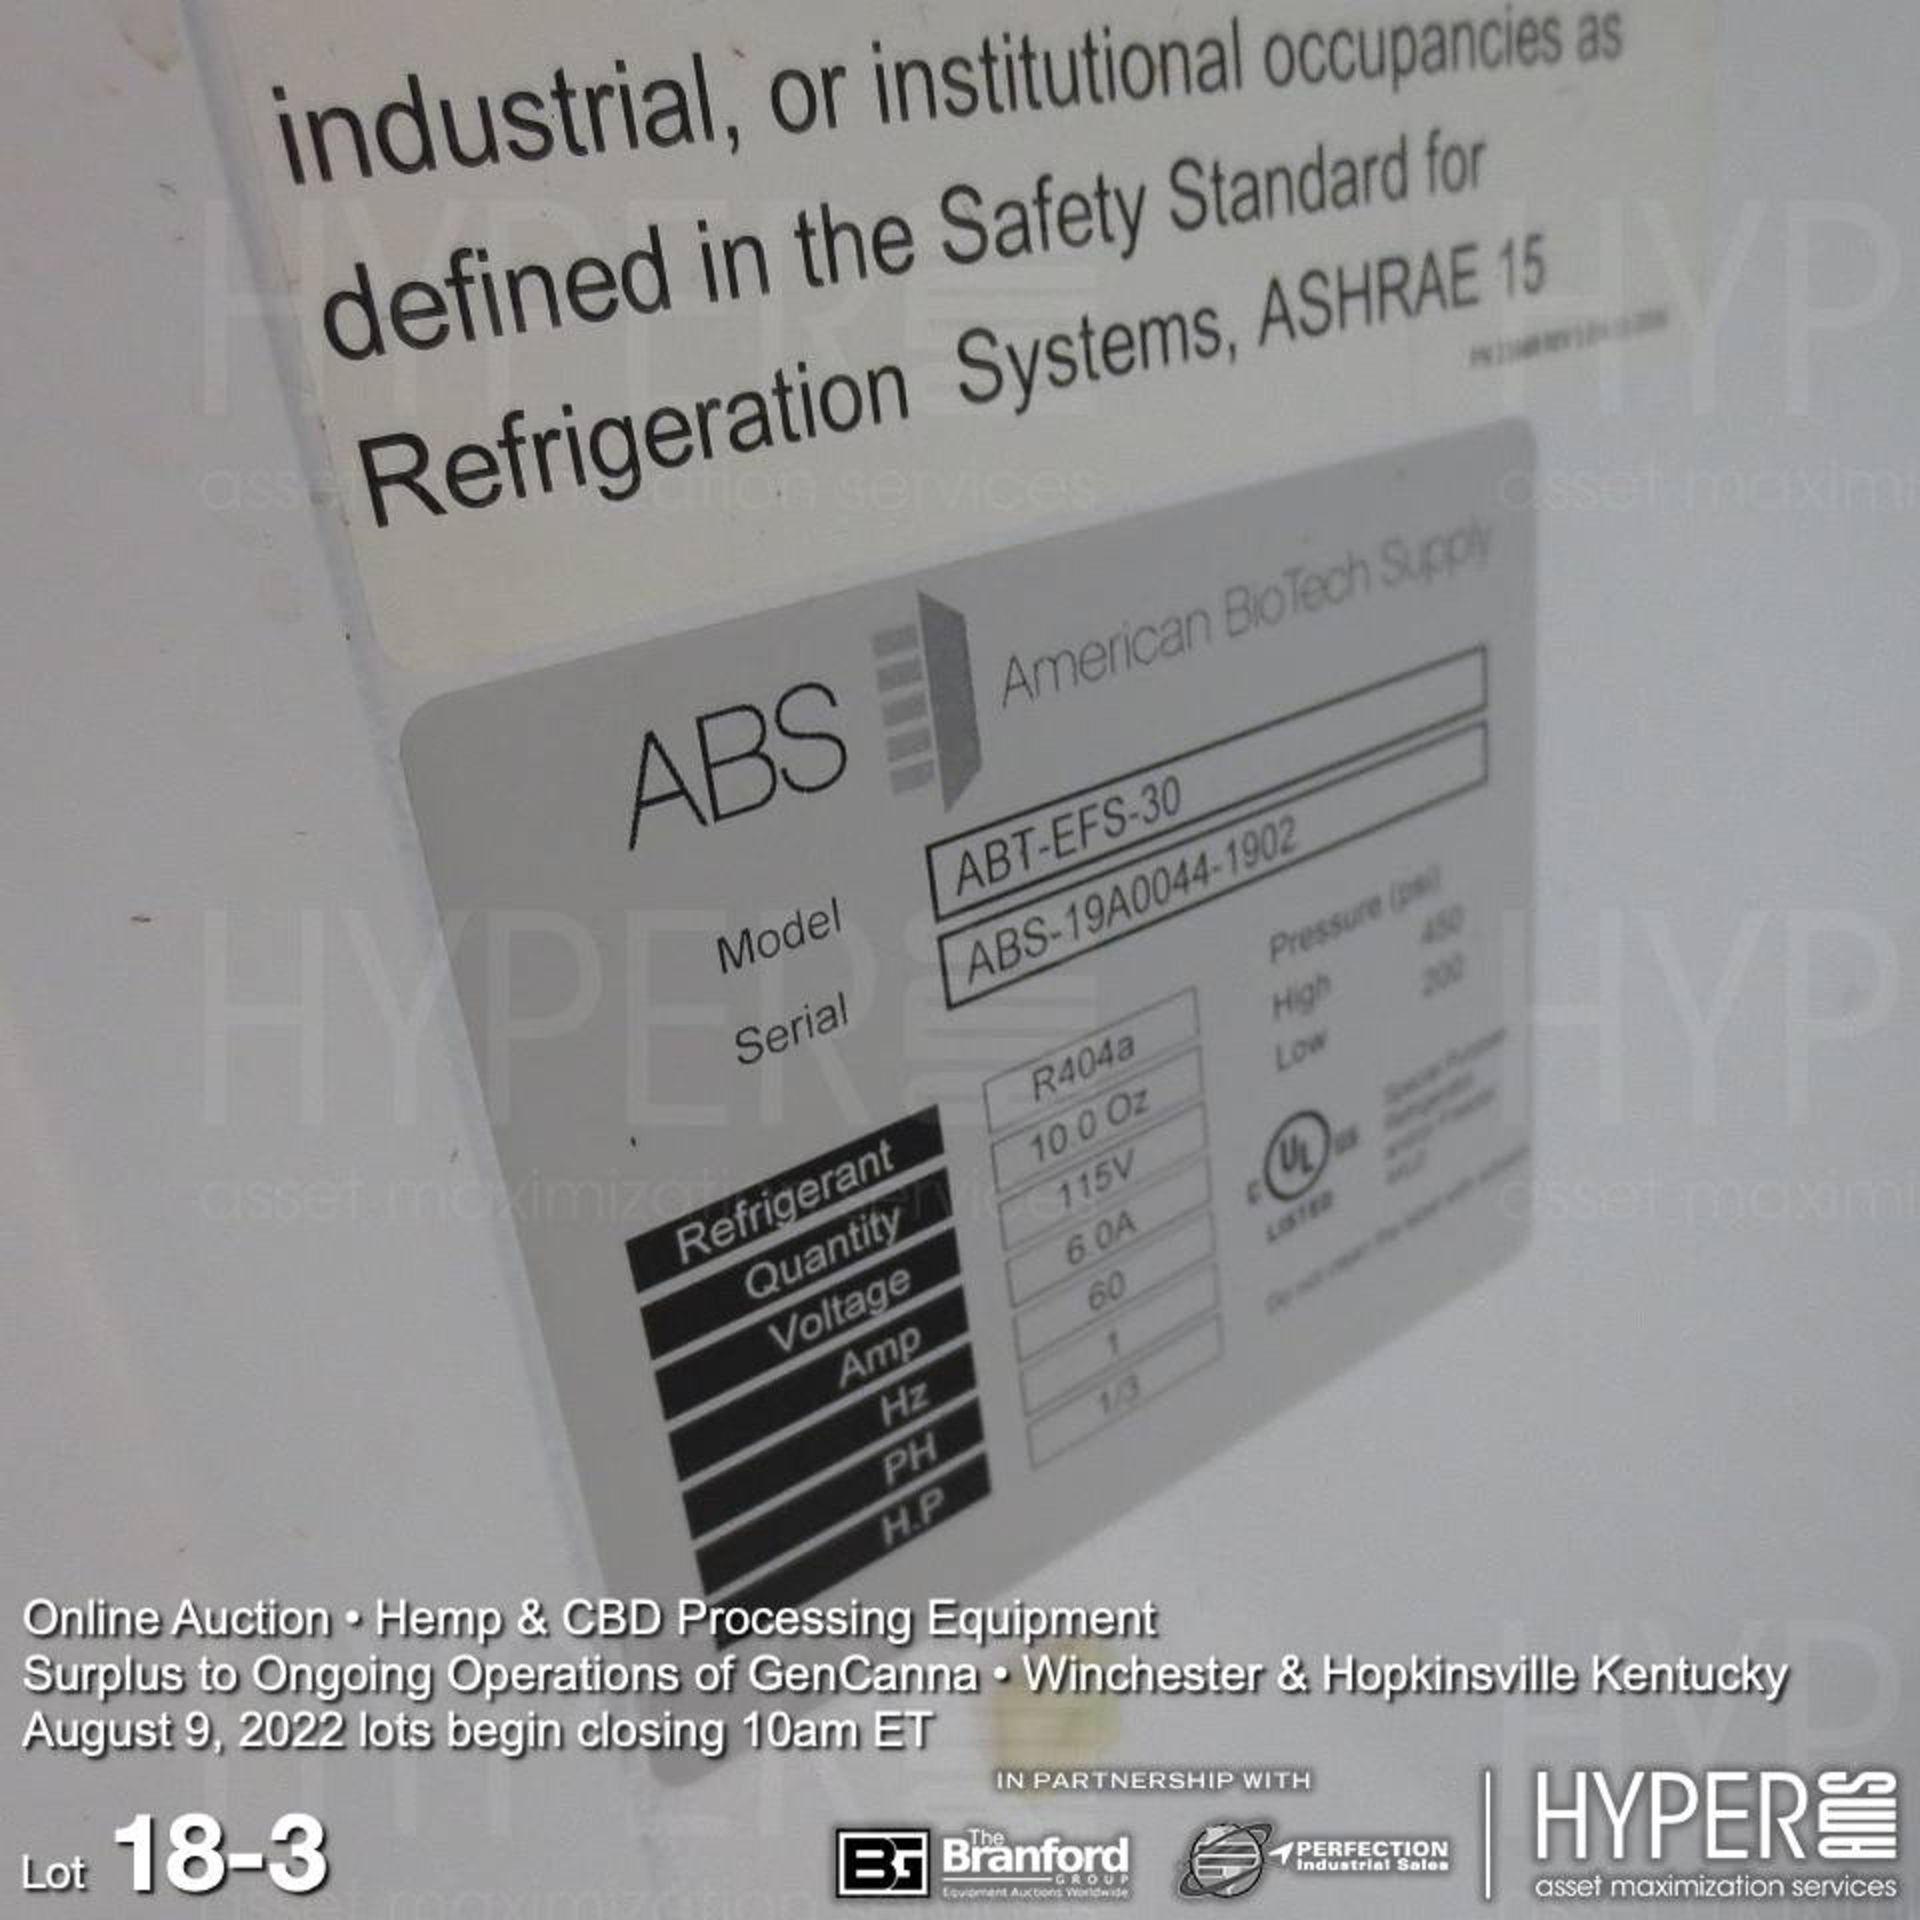 ABS ABT-EFS-30 refrigerator / freezer, 115V, 1PH, 72"H x 35"W x 31"D - Image 3 of 3